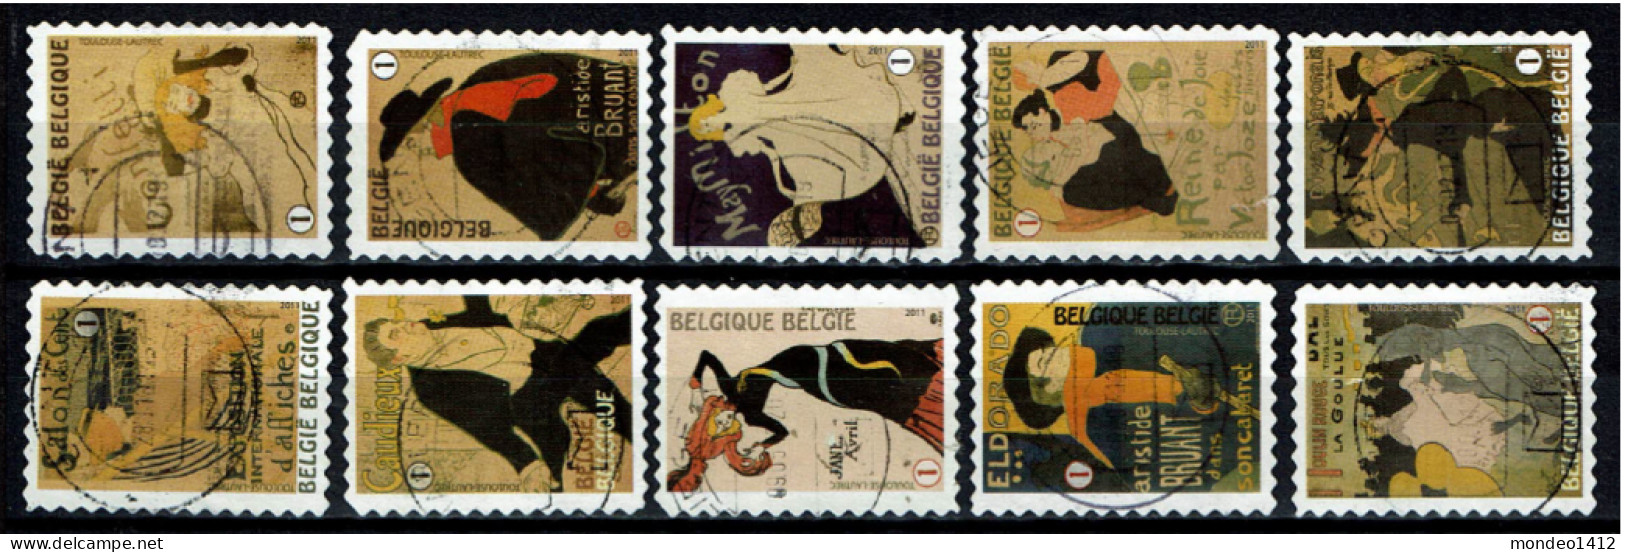 België OBP 4145/4154 - Zegels Uit Boekje B122 - Henri De Toulouse-Lautrec - Used Stamps